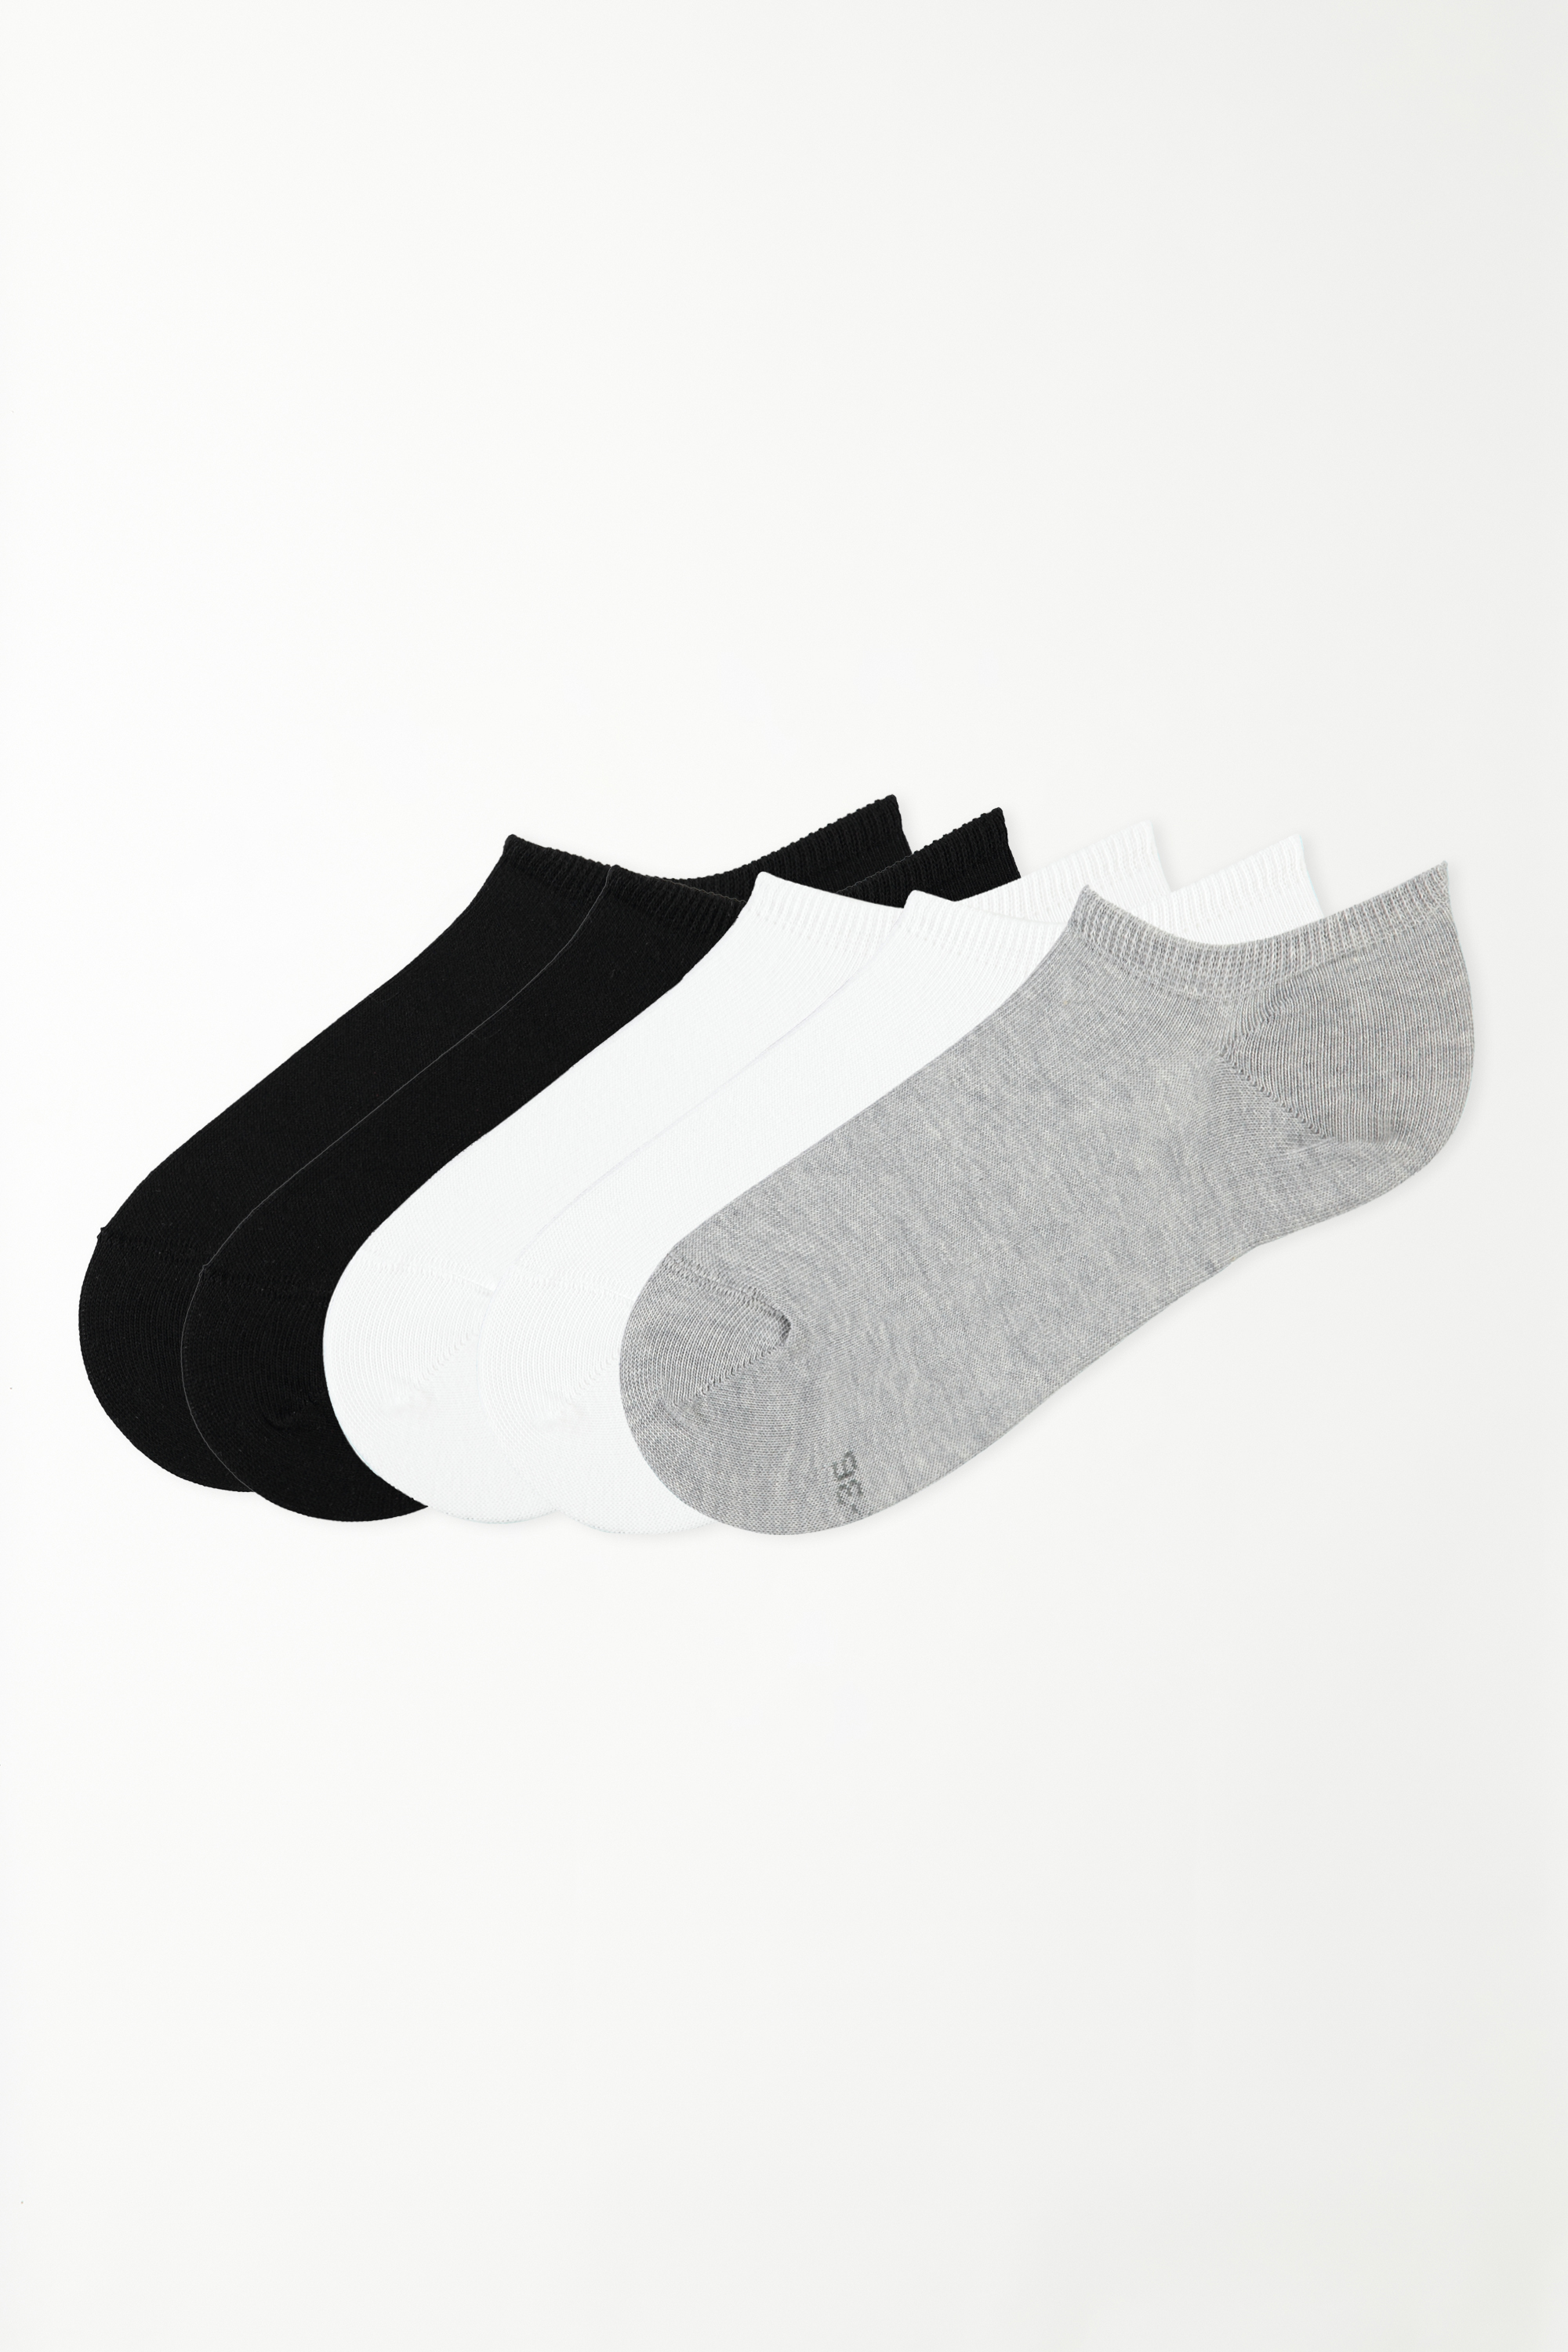 5 X Plain Colour Cotton Trainer Socks